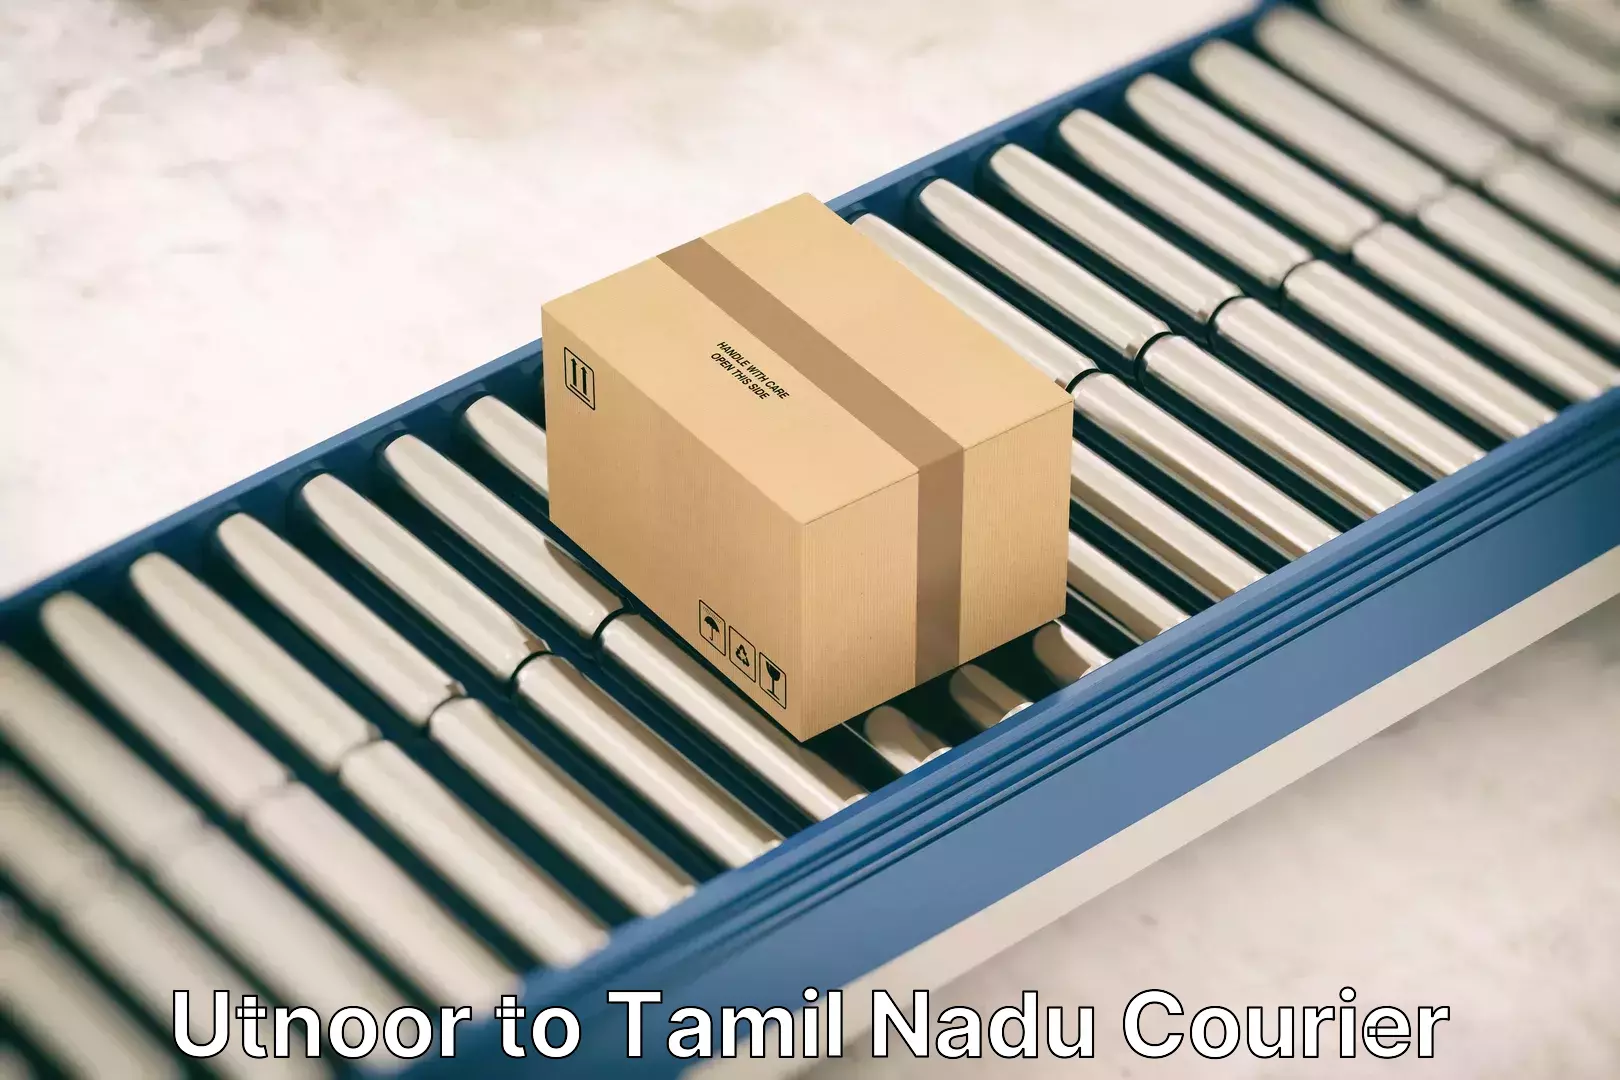 Efficient household moving Utnoor to Tamil Nadu